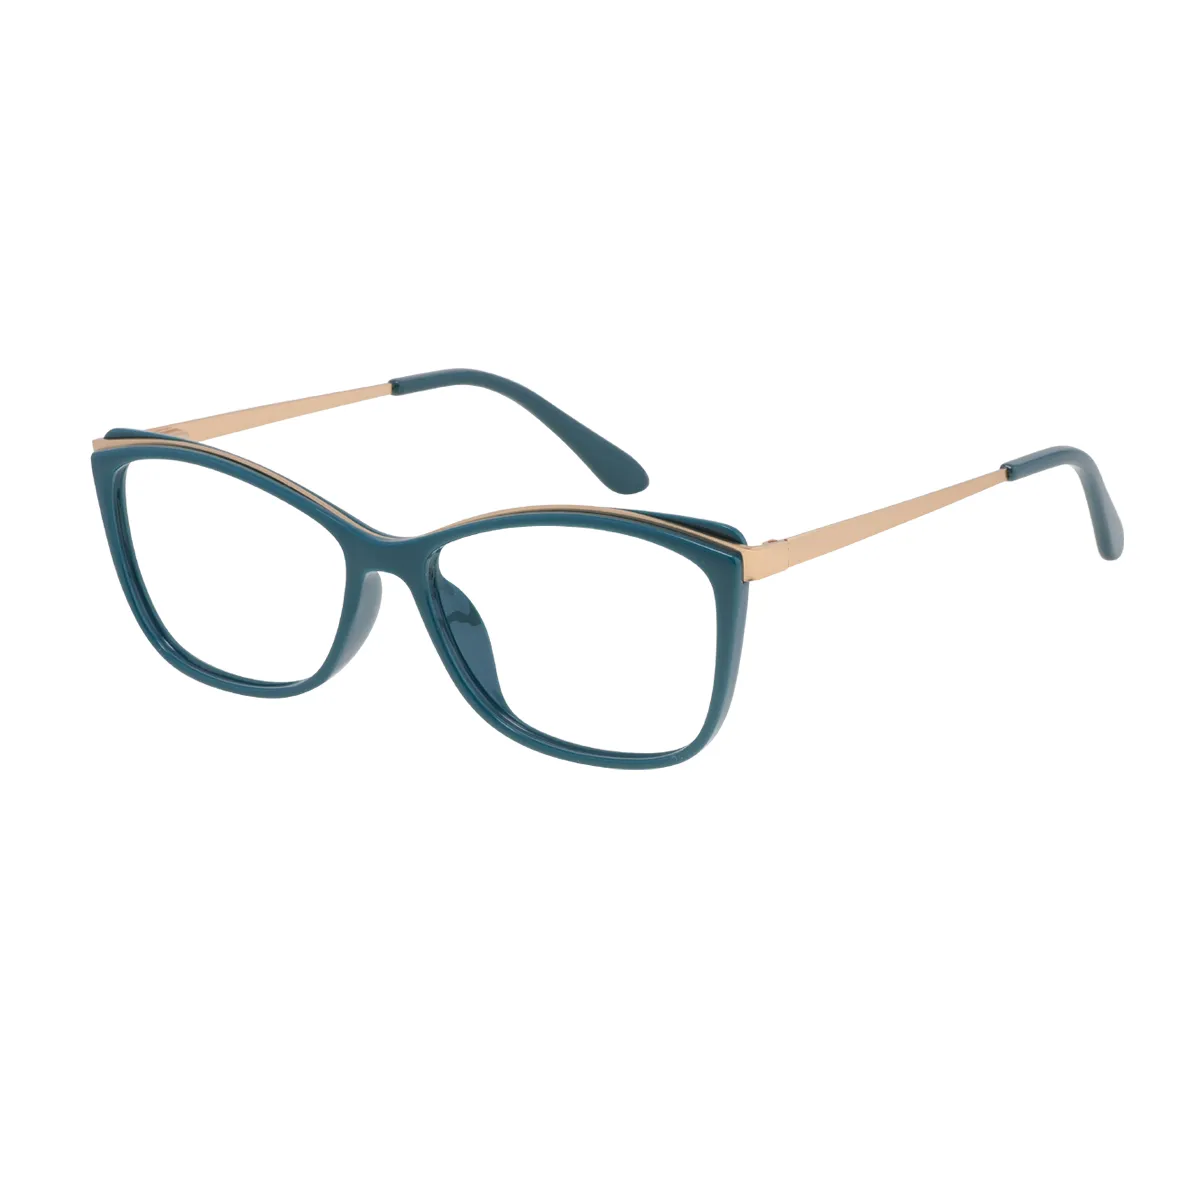 Avice - Cat-eye Green Glasses for Women